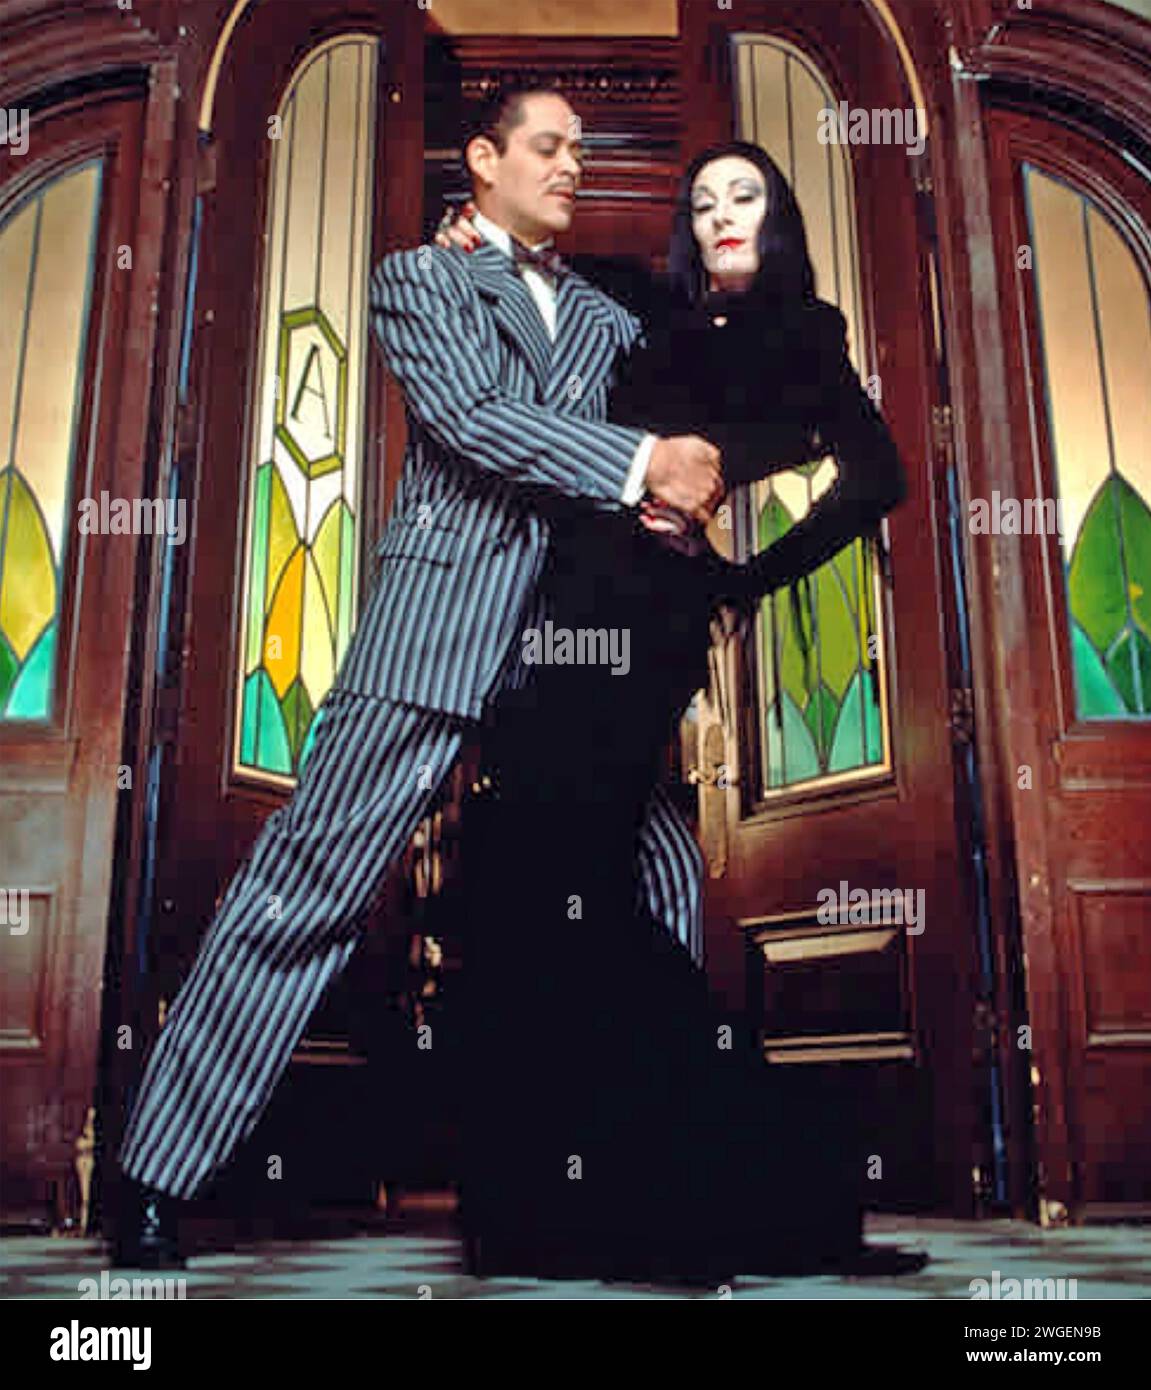 LA FAMIGLIA ADDAMS 1991 film della Columbia Pictures con Anjelica Huston nel ruolo di Morticia Addams e Raul Julia nel ruolo di Gomez Addams Foto Stock